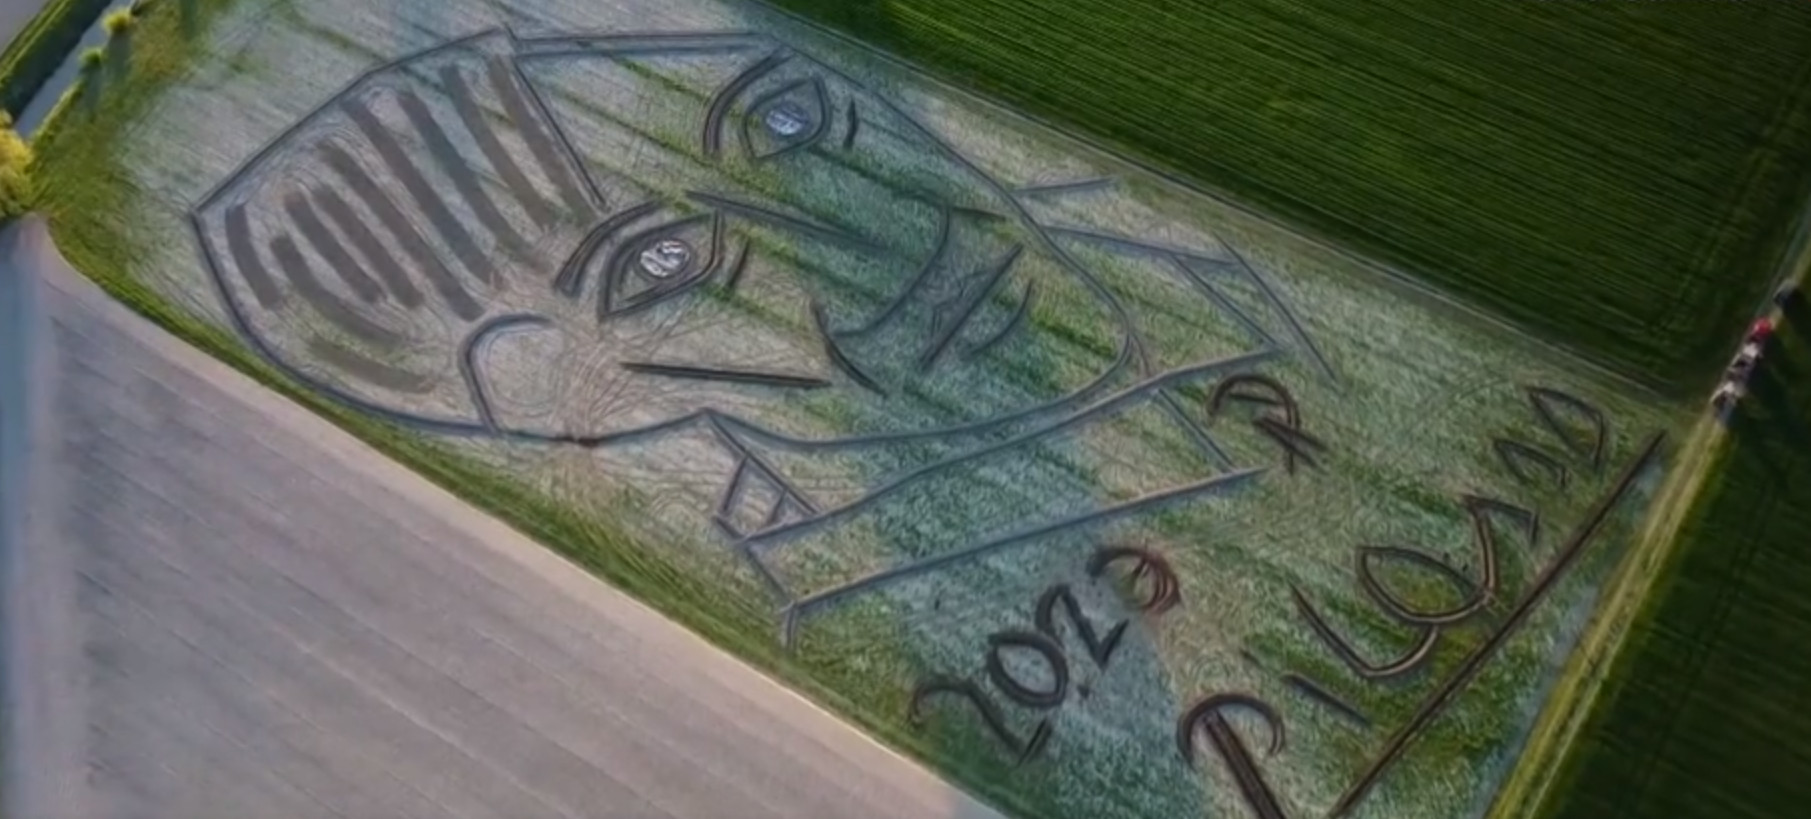 Ιταλία: Καλλιτέχνης «ζωγράφισε» με τρακτέρ πορτρέτο του Πικάσο σε χωράφι